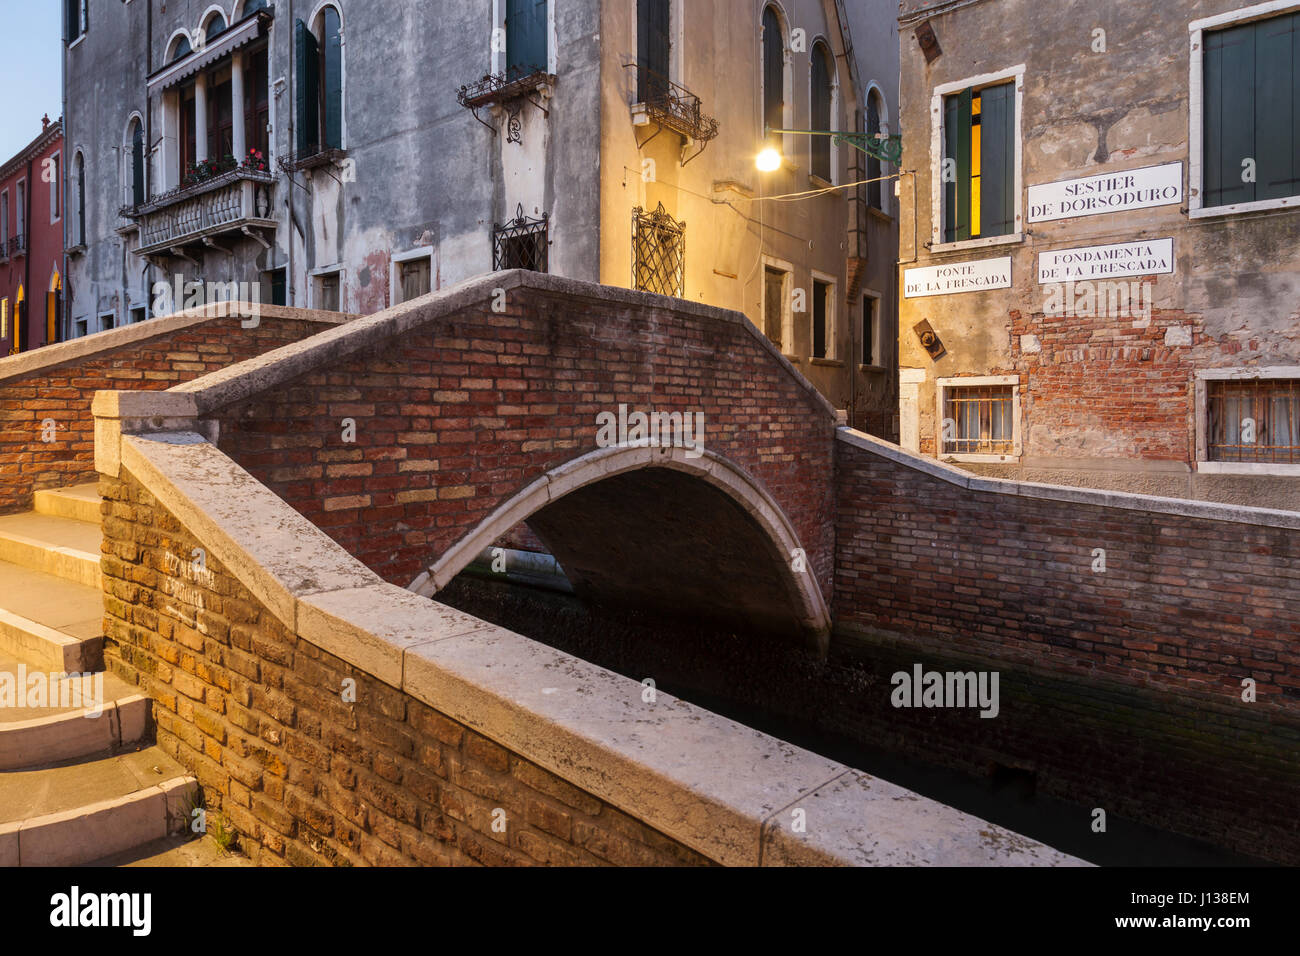 Dawn in sestiere of Dorsoduro, Venice, Italy. Stock Photo